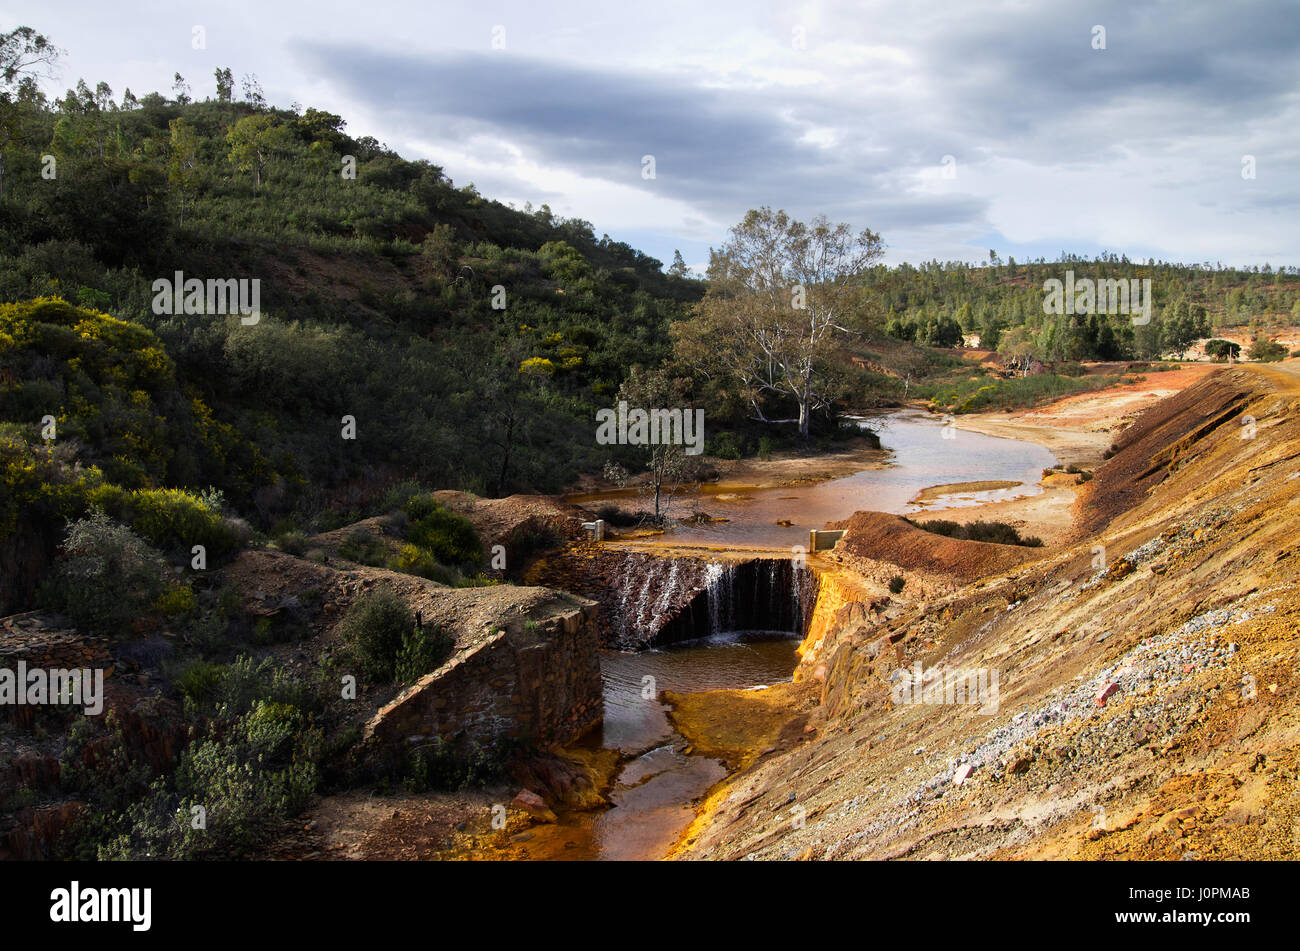 Rouge et jaune soufre et de fer rivière polluée en passant par un barrage à Sao Domingos mine abandonnée. Mertola, Alentejo, Portugal. Banque D'Images